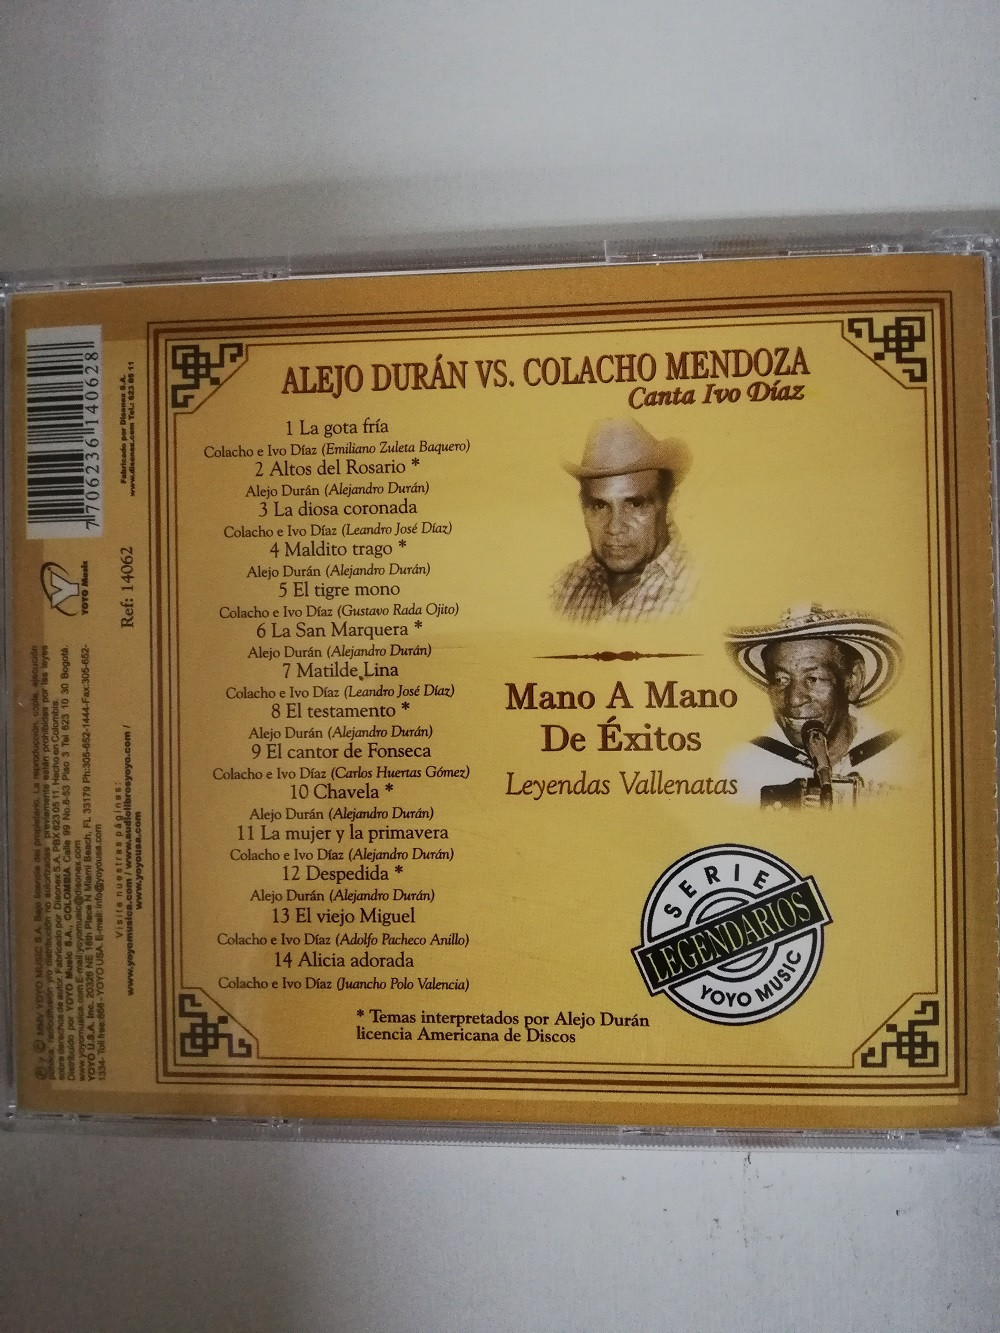 Imagen CD ALEJO DURÁN VS. COLACHO MENDOZA - MANO A MANO DE EXITOS 2